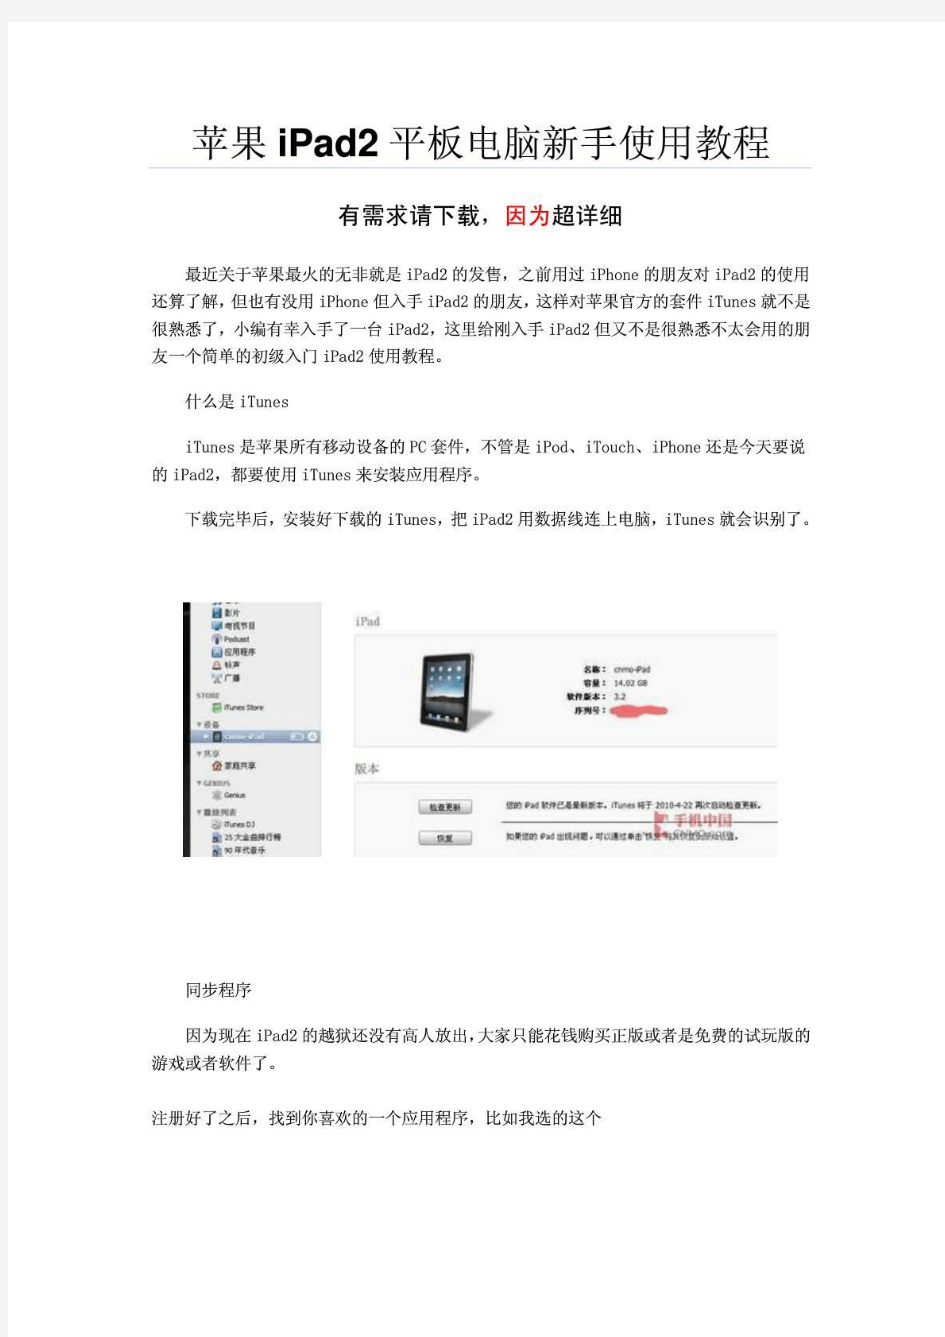 最新苹果IPAD2使用说明书完整超详细_1432490233